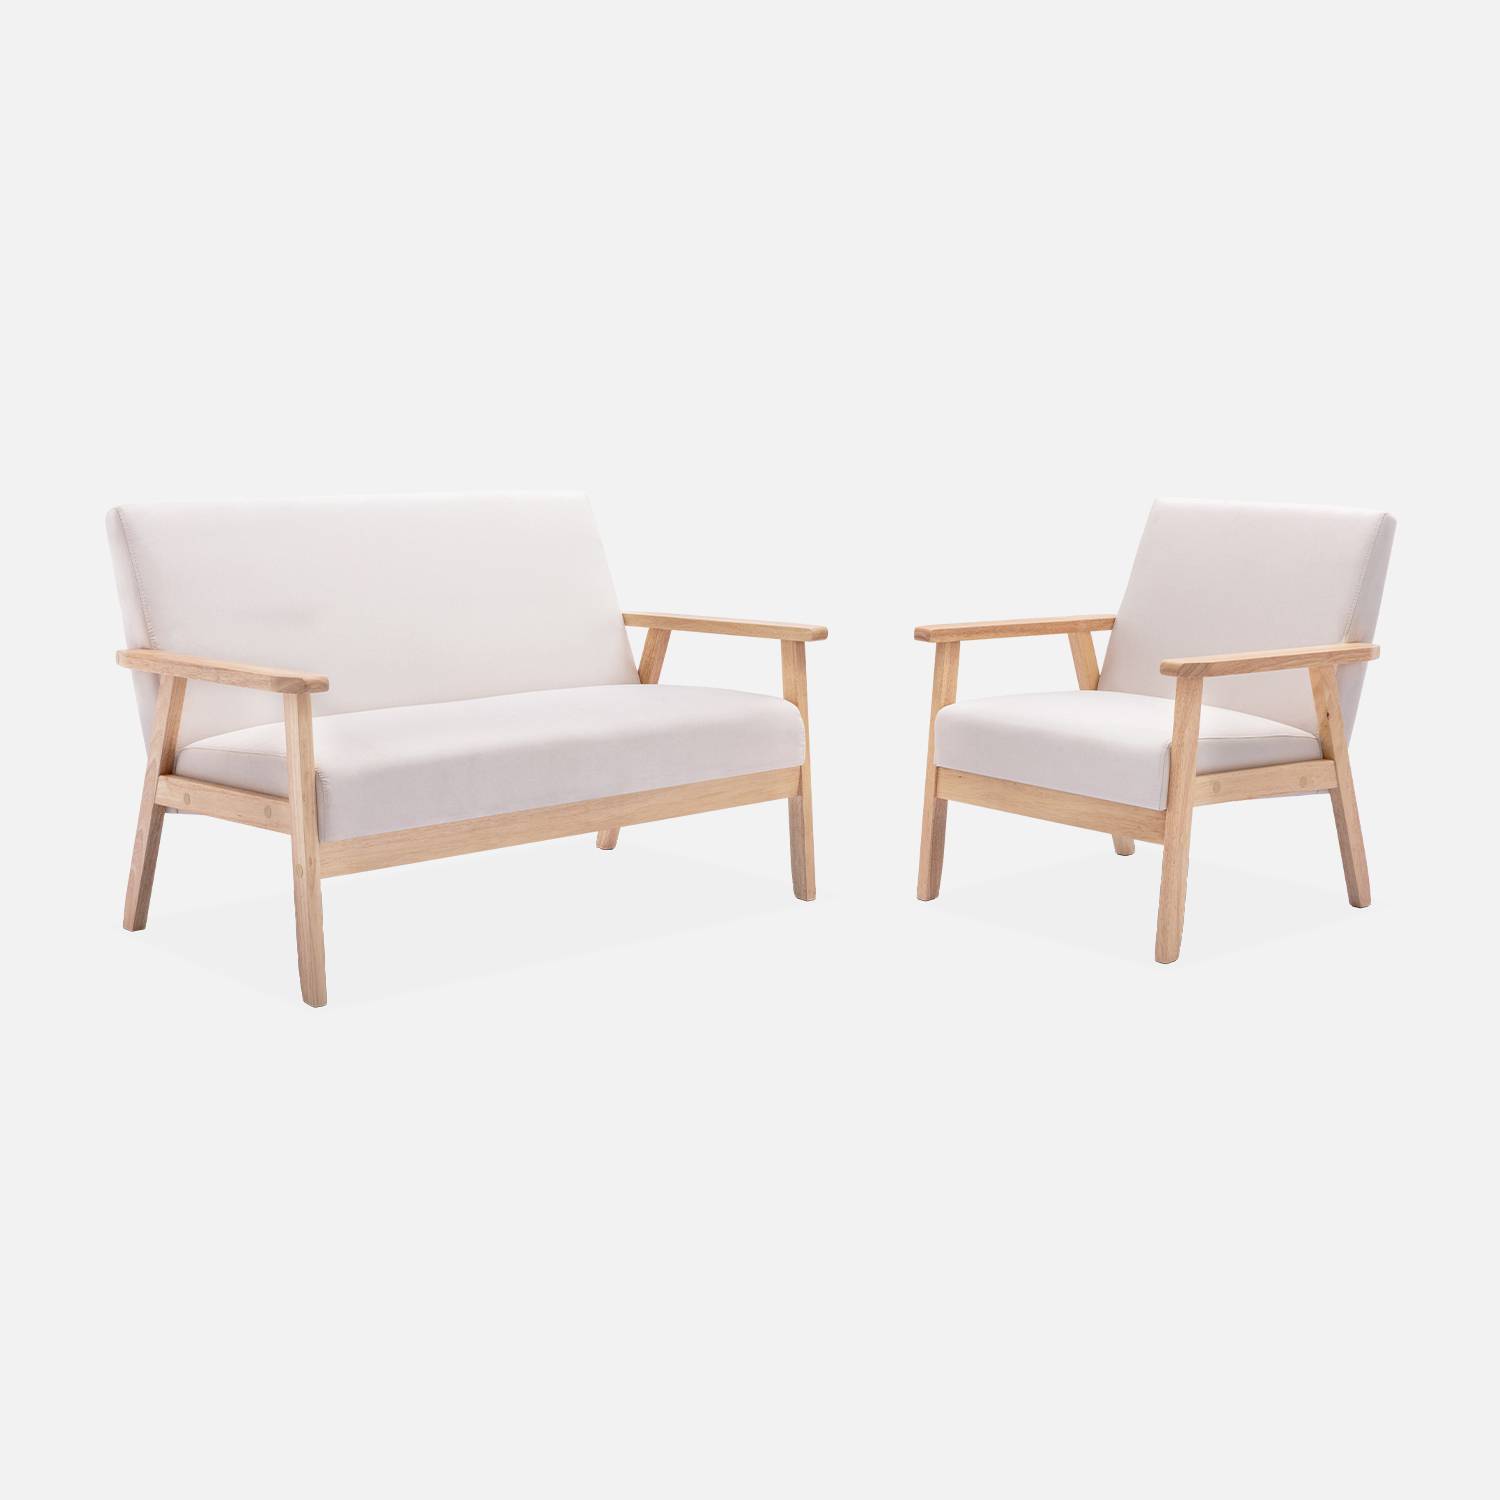 Banco y sillón escandinavos en madera y tela crema | sweeek